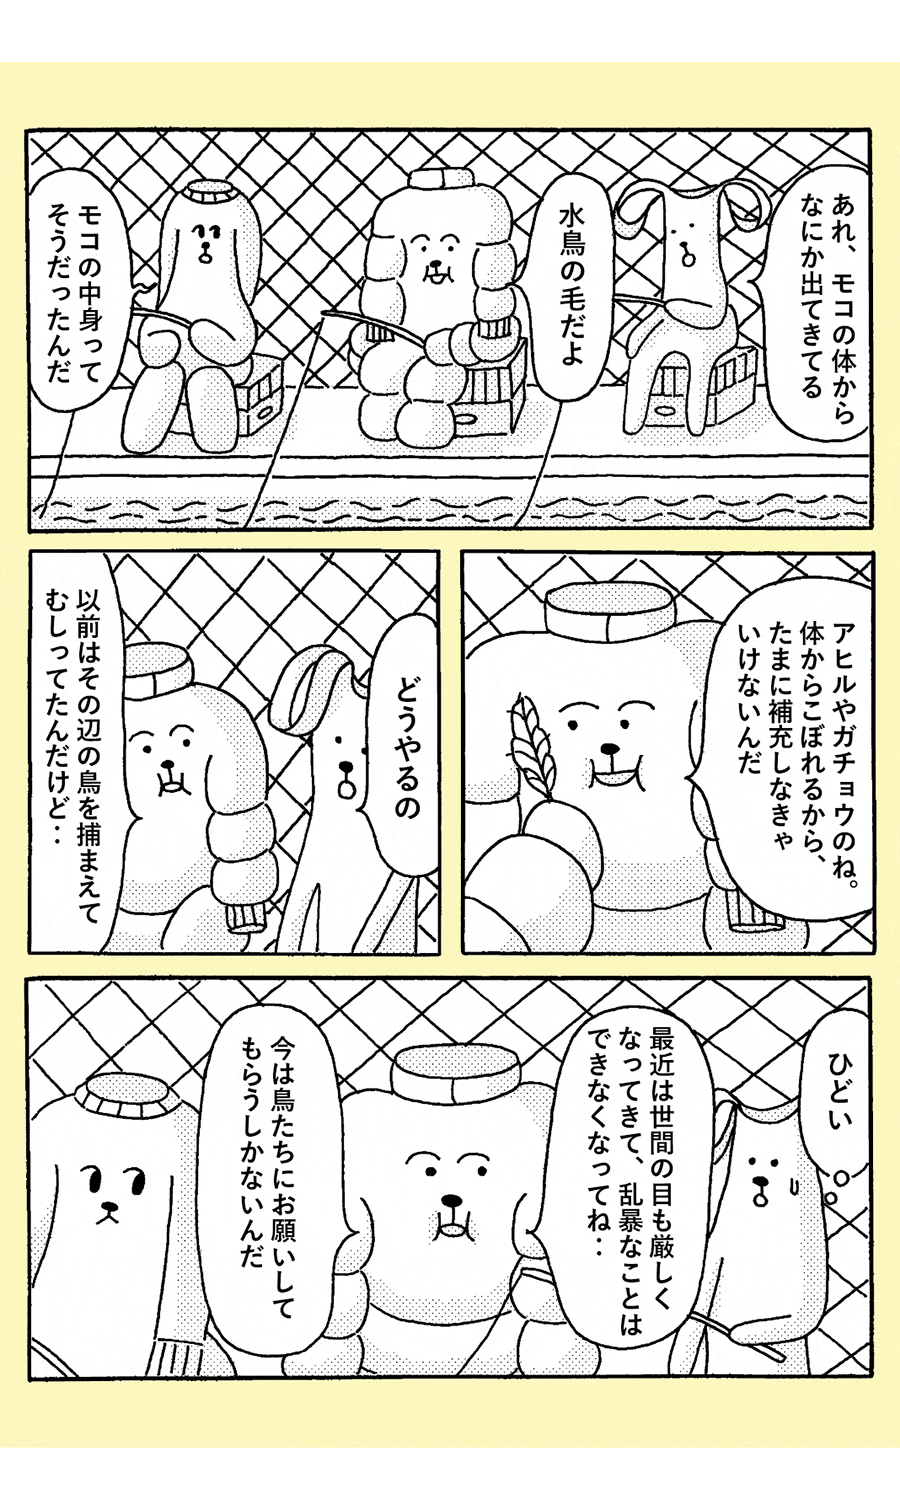 連載漫画『トップスドッグズ』第28話